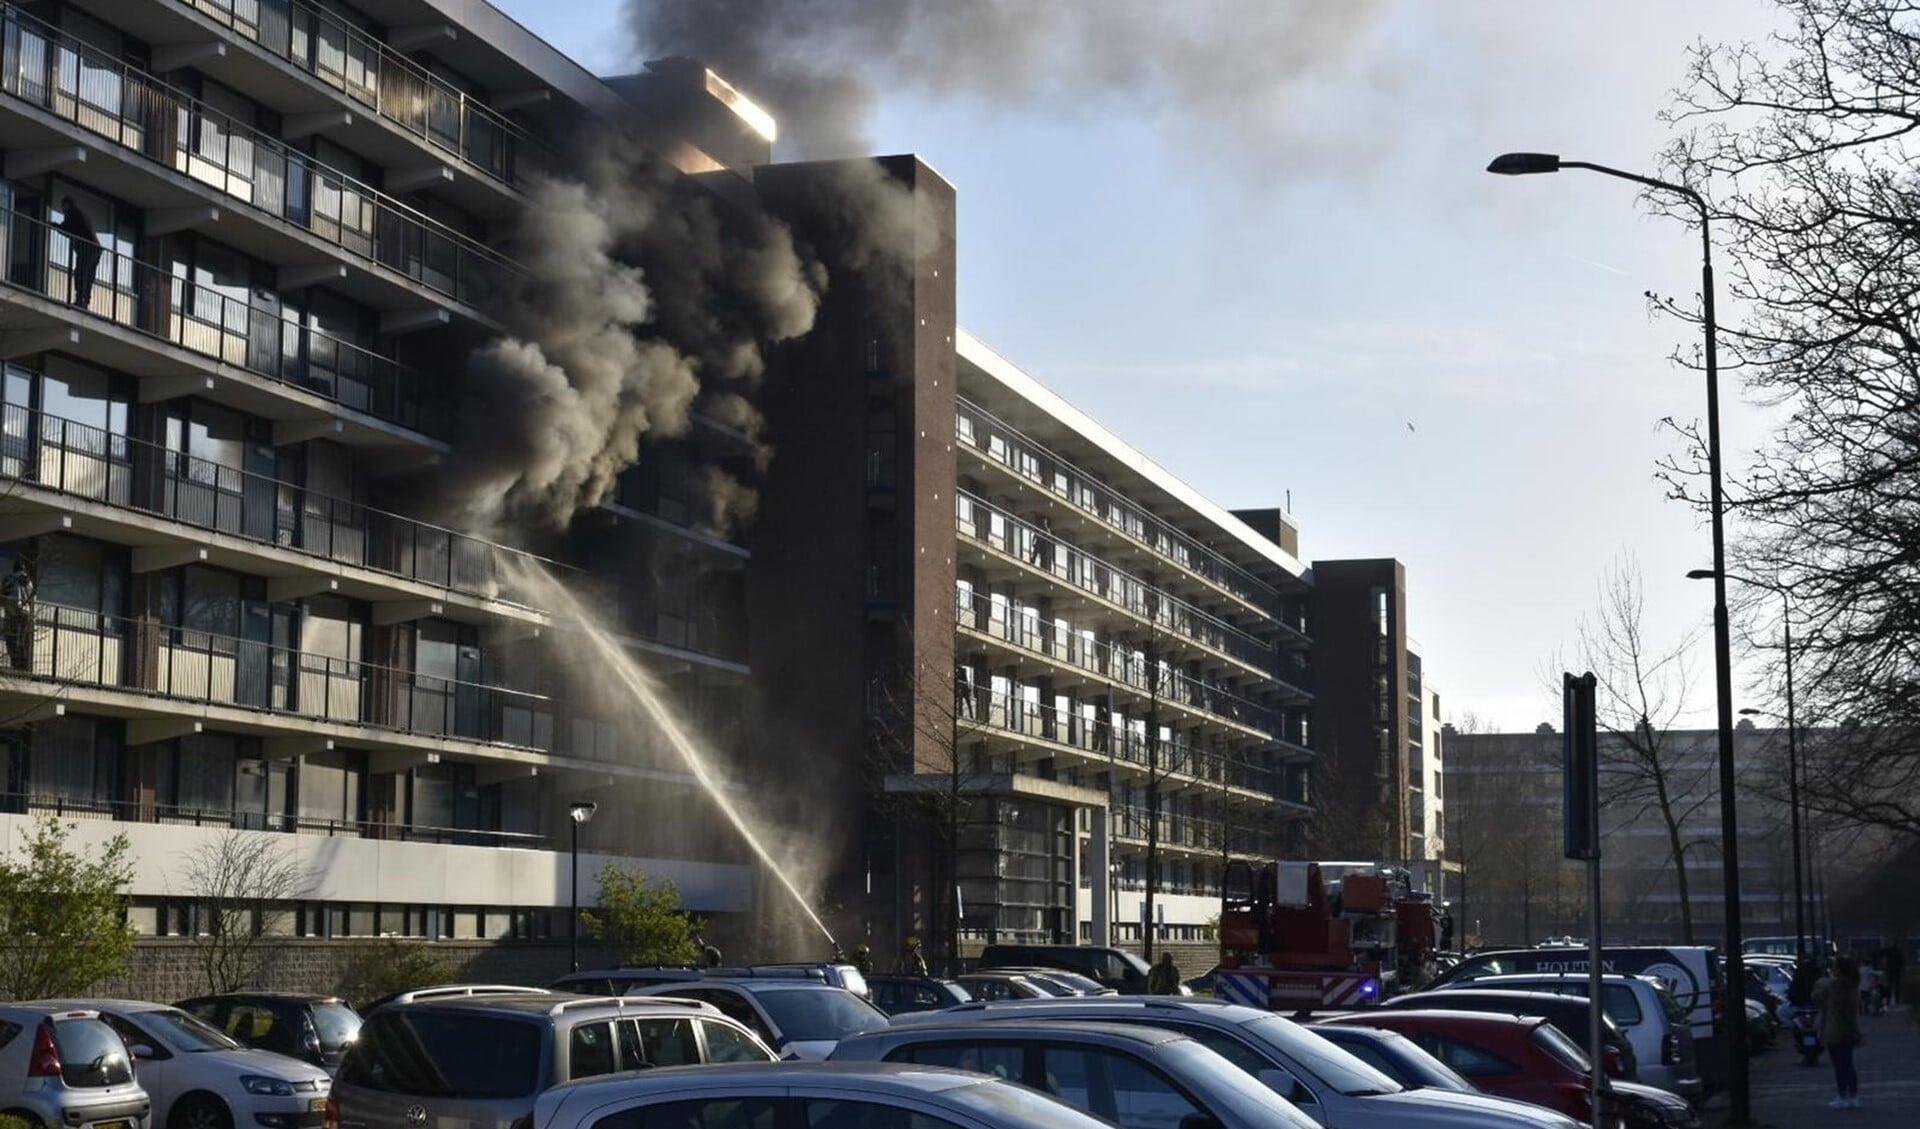 Brand in flat in een willekeurige flat in Leidschendam. Hier is geen sprake van brandbare gevelbekleding (archieffoto).